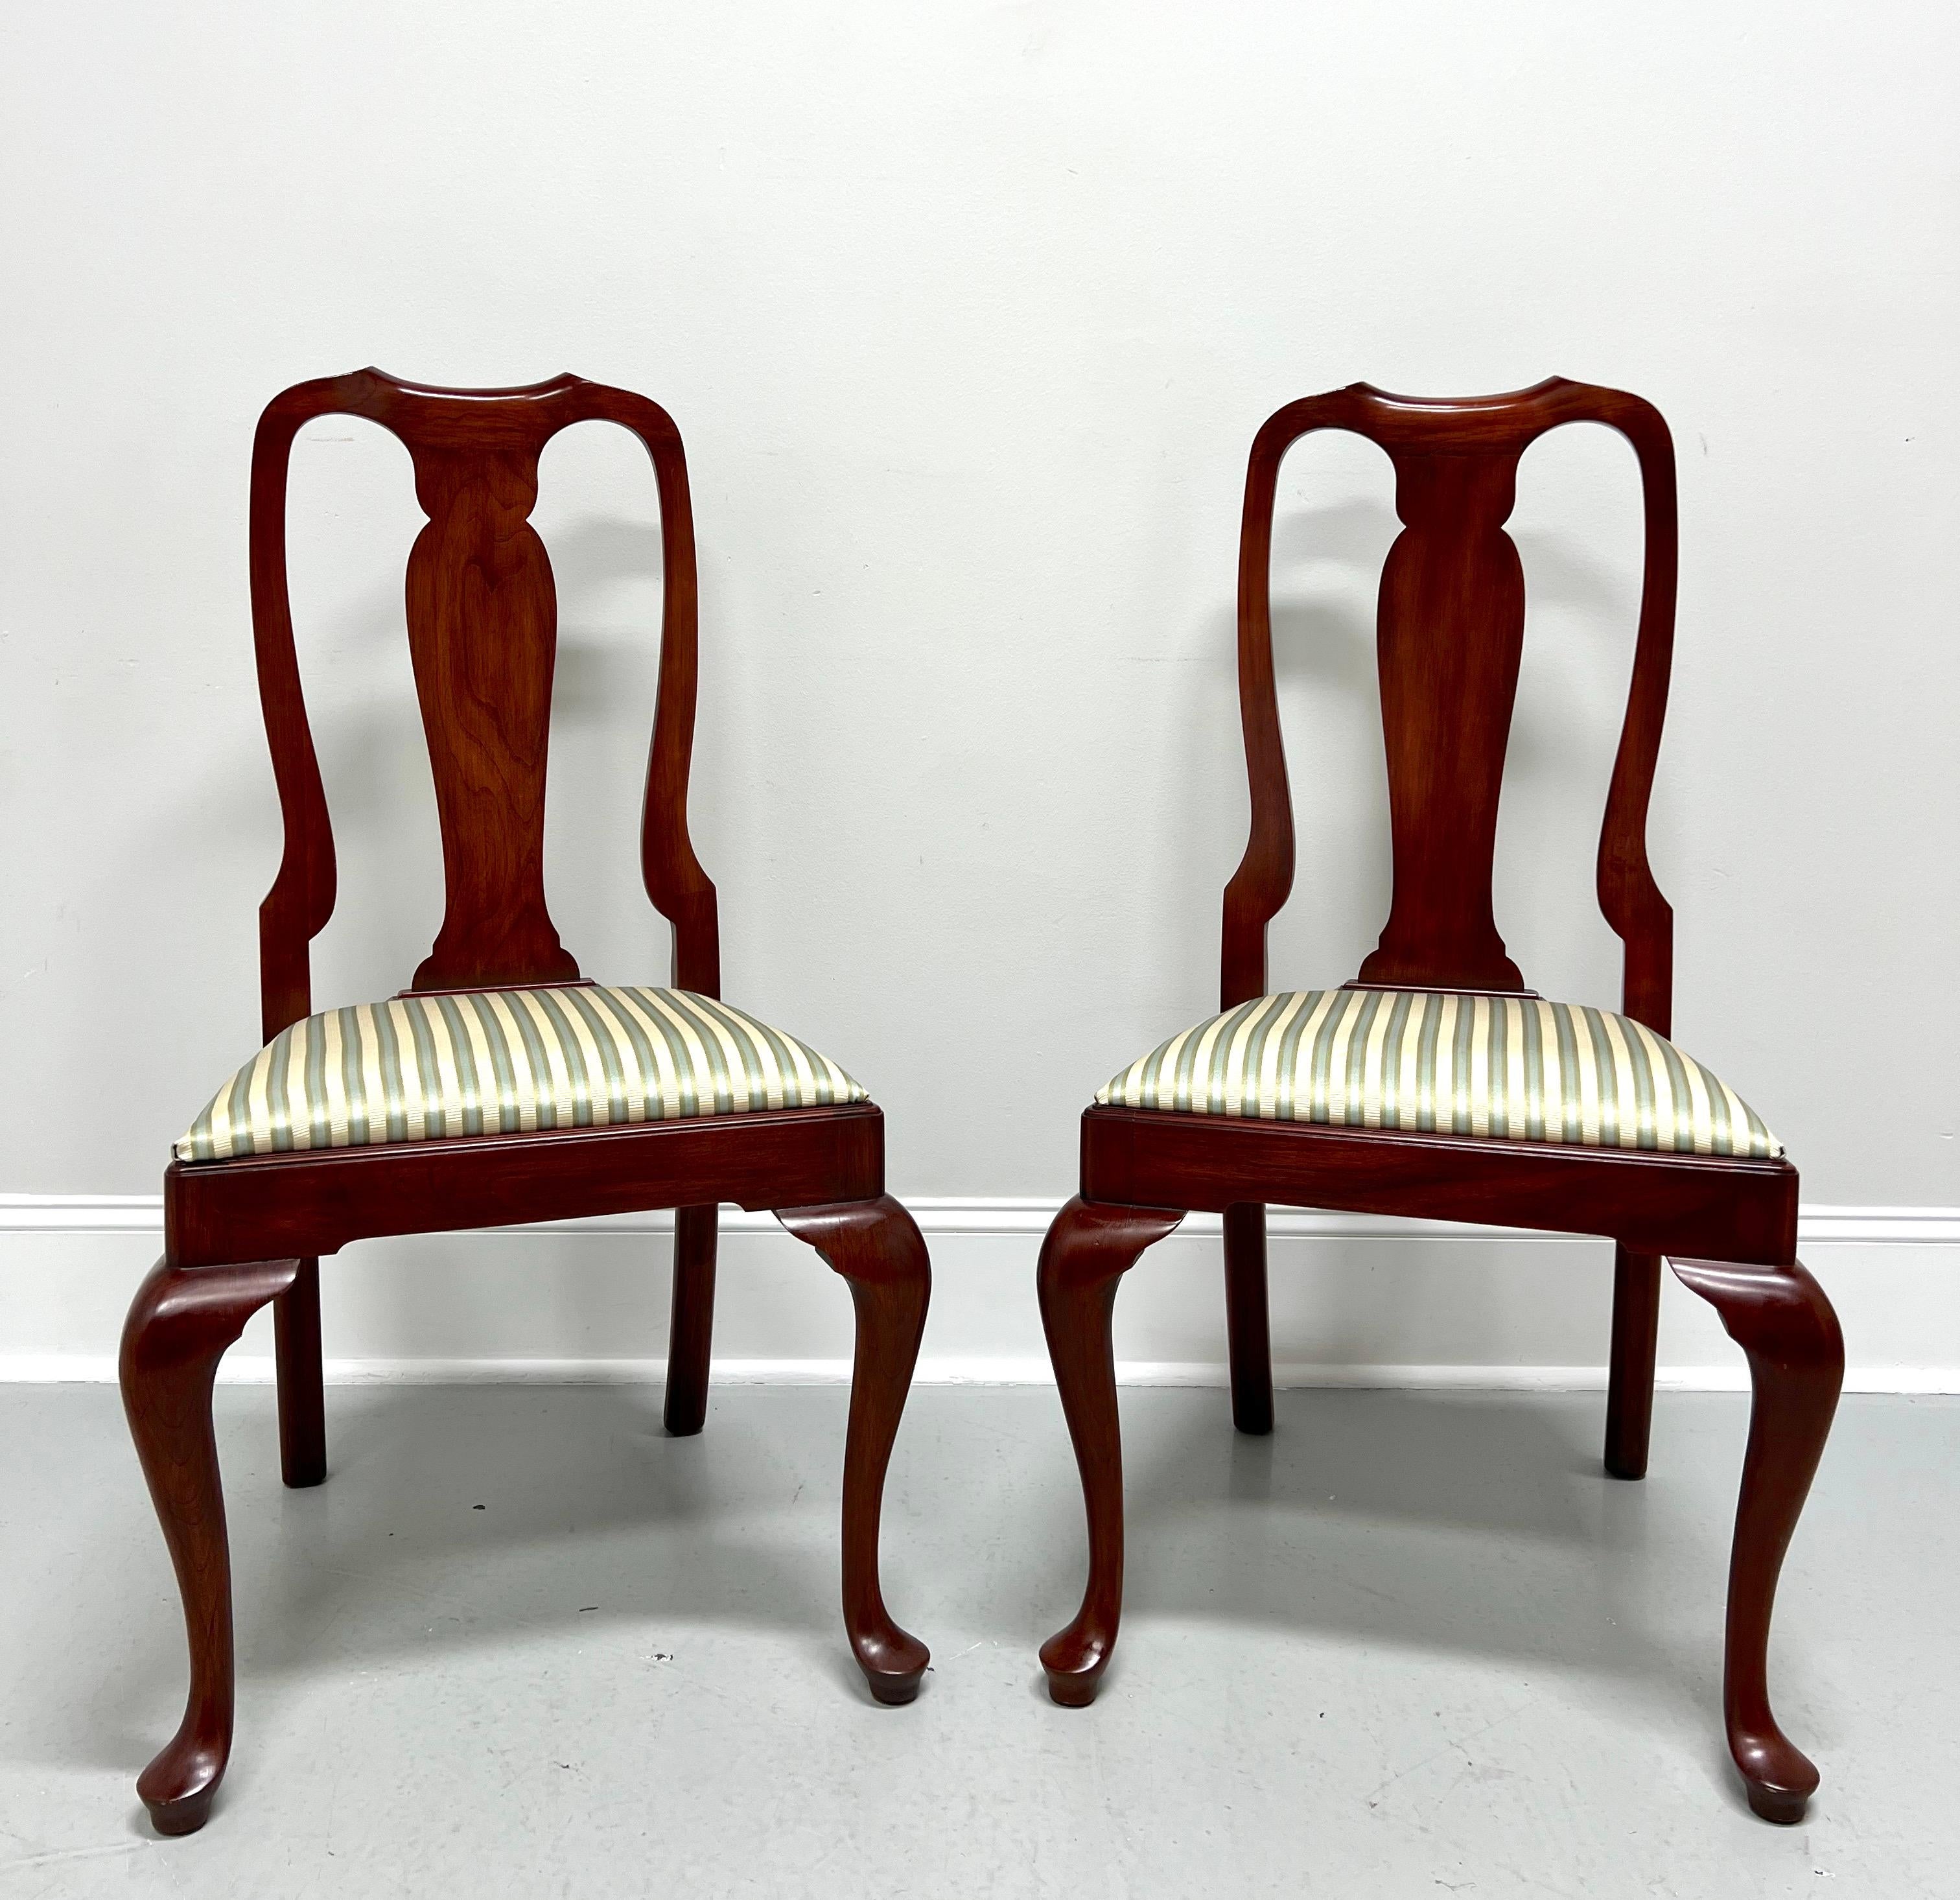 HENKEL HARRIS 105S 24 Wild Black Cherry Queen Anne Dining Side Chairs - Pair B 5